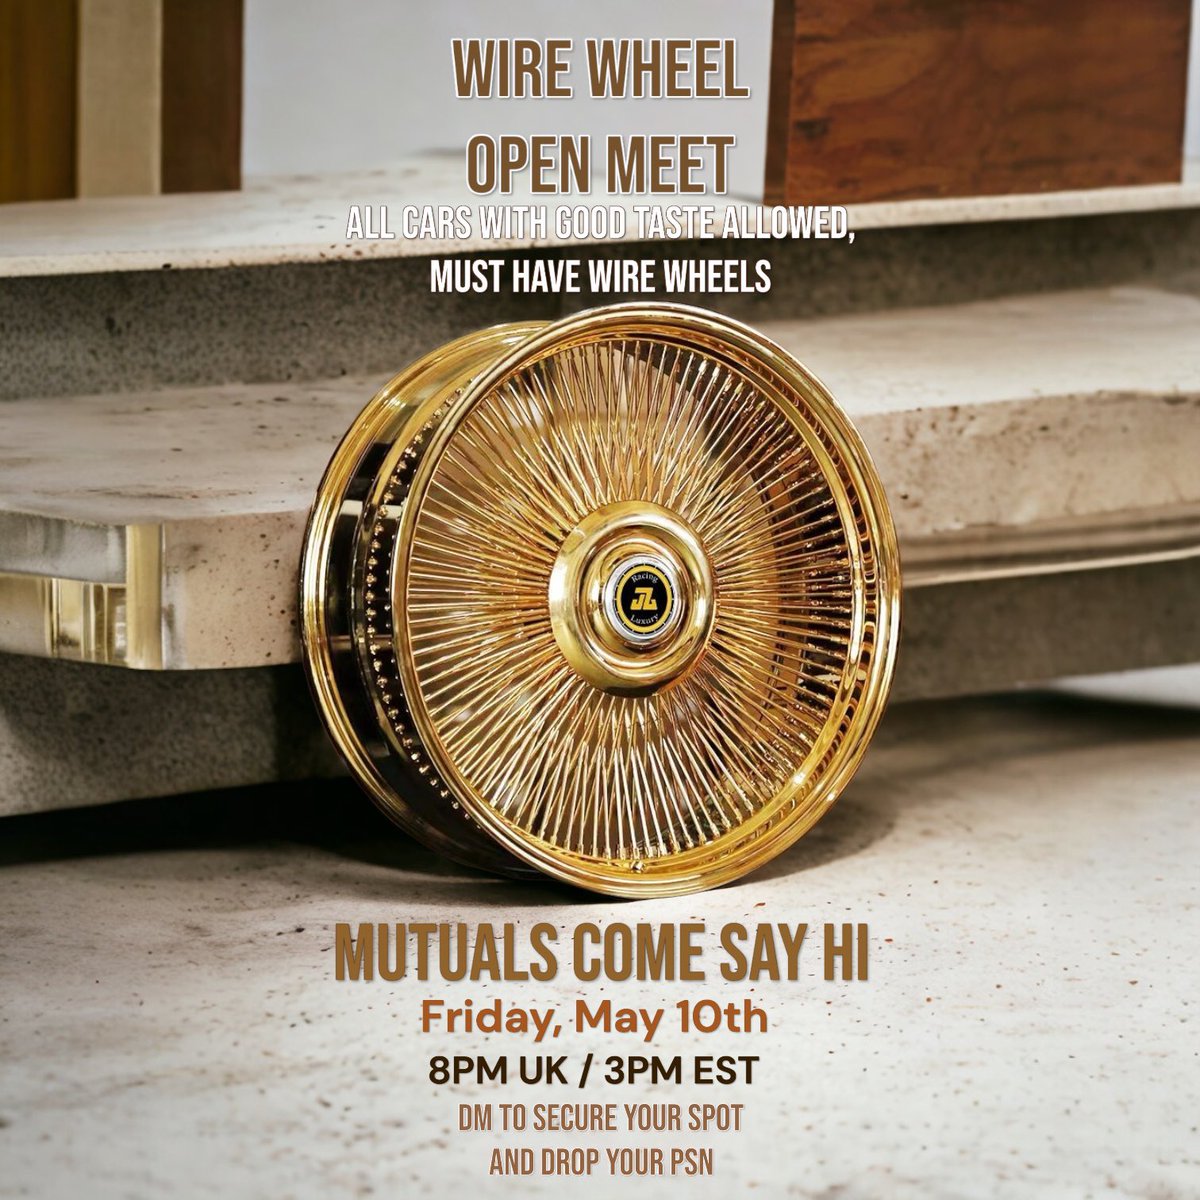 Wire Wheel Open Meet

DM to secure your spot! 

#GTAOnline